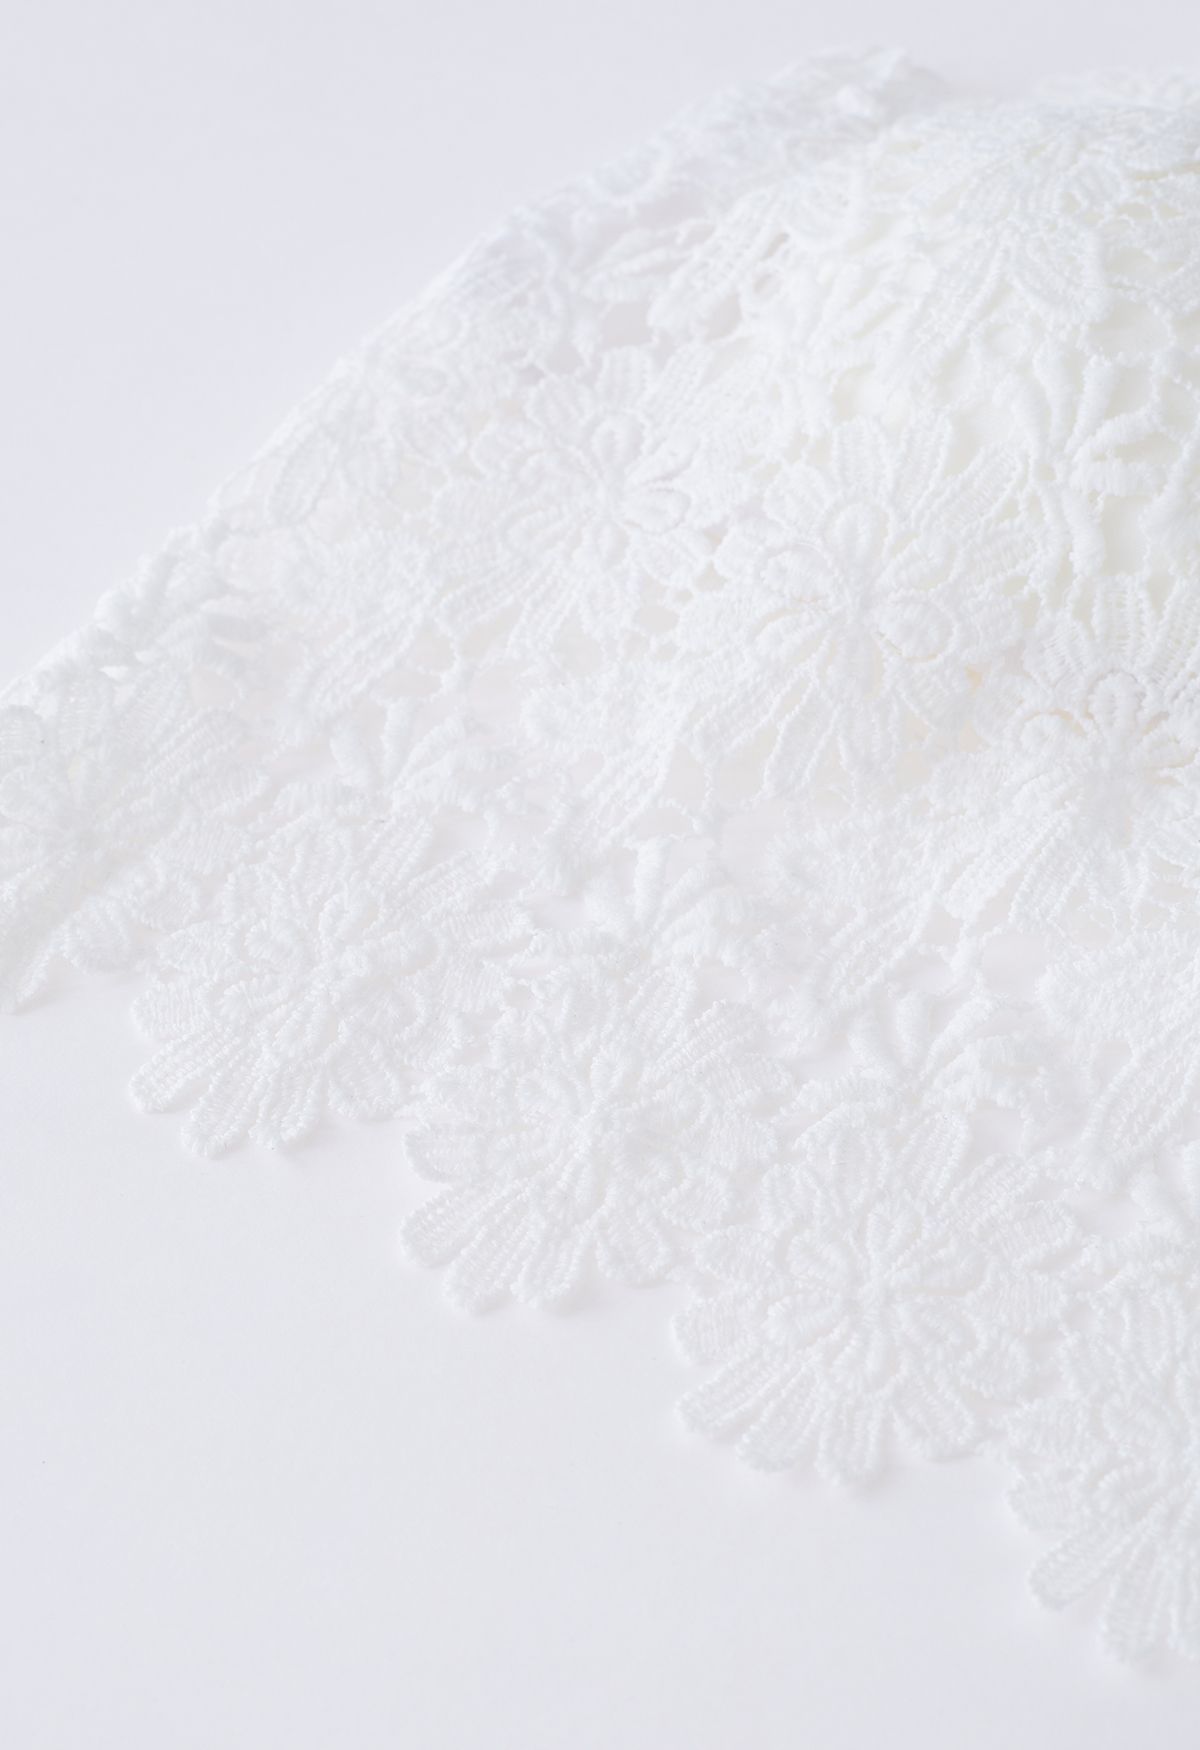 Haut de soutien-gorge en crochet floral exquis en blanc